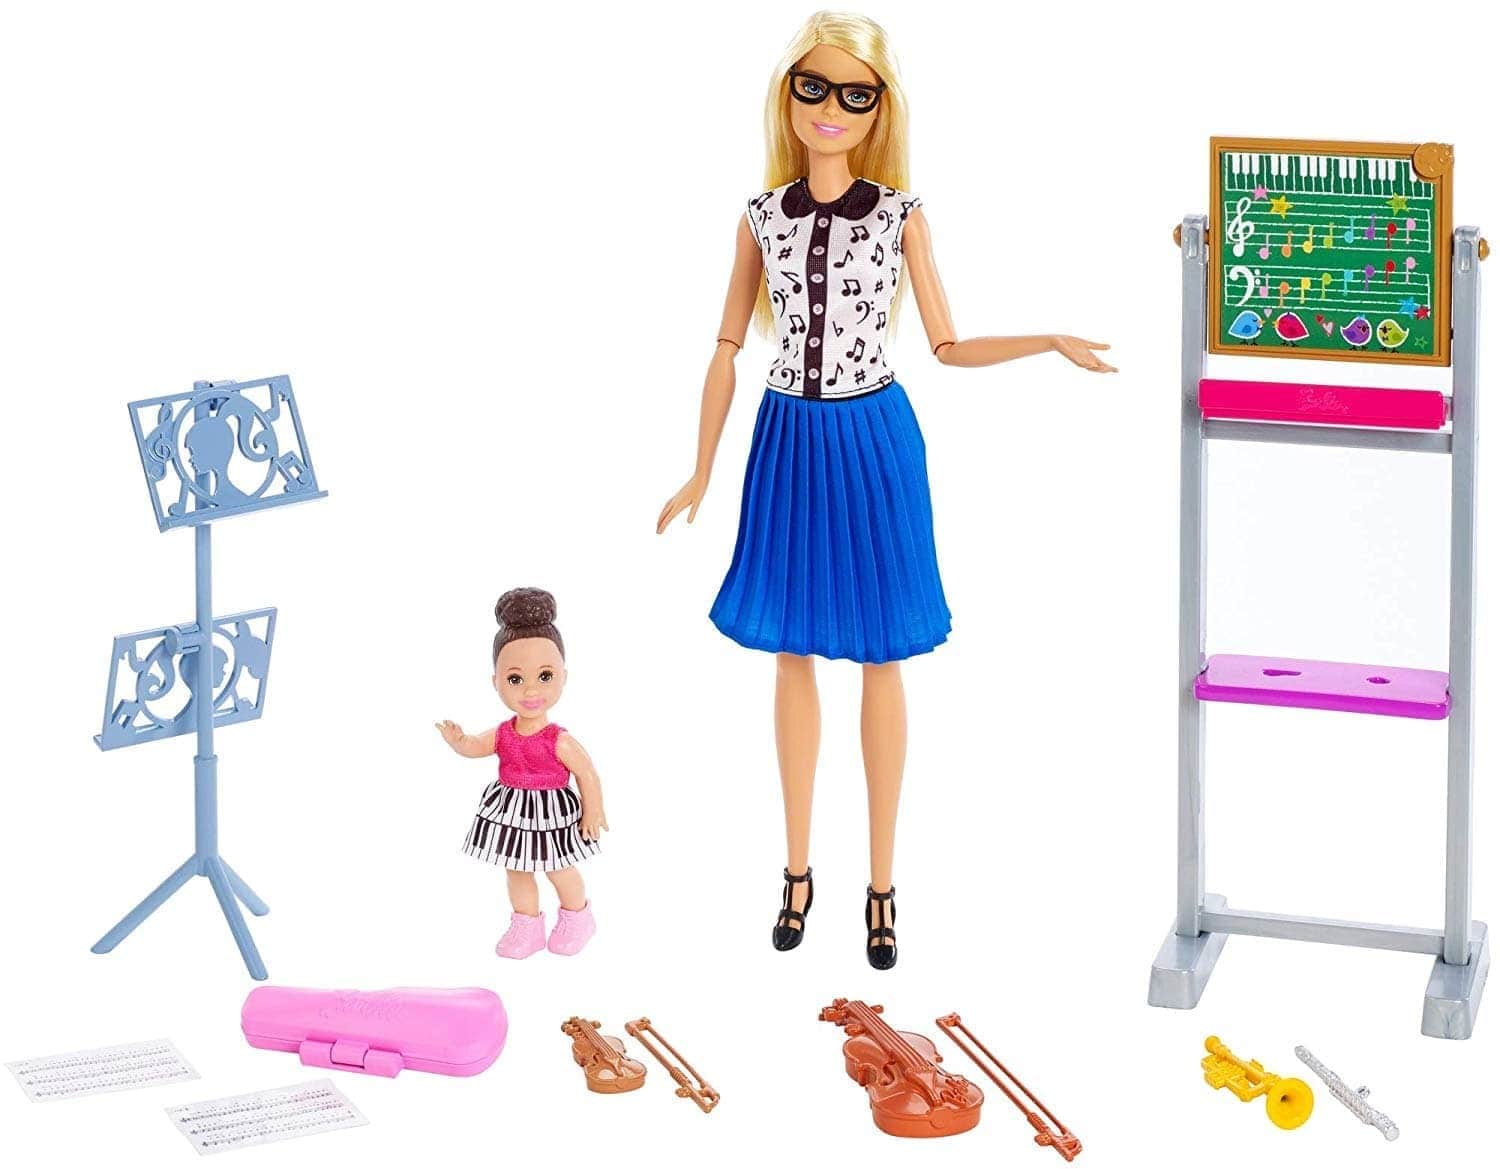 Набор кукол Barbie "Кем быть?" Учитель музыки, 29 см и 10 см, FXP18